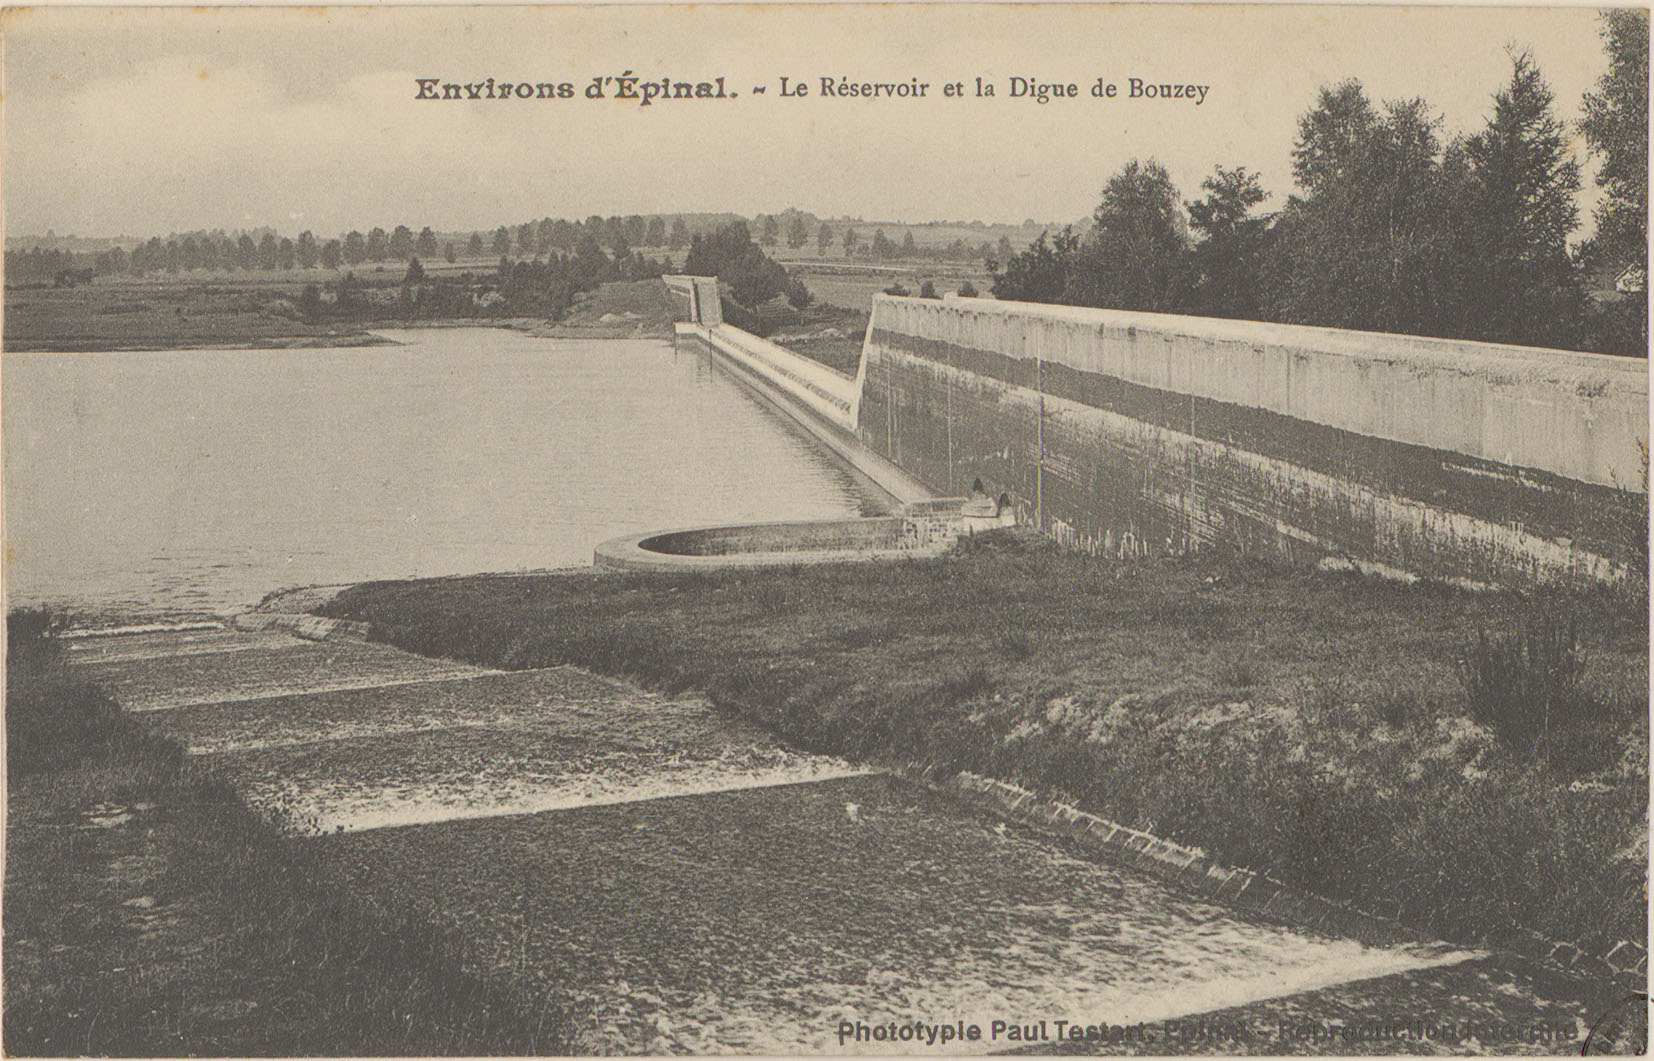 Contenu du Environs d'Épinal, Le Réservoir et la digue de Bouzey